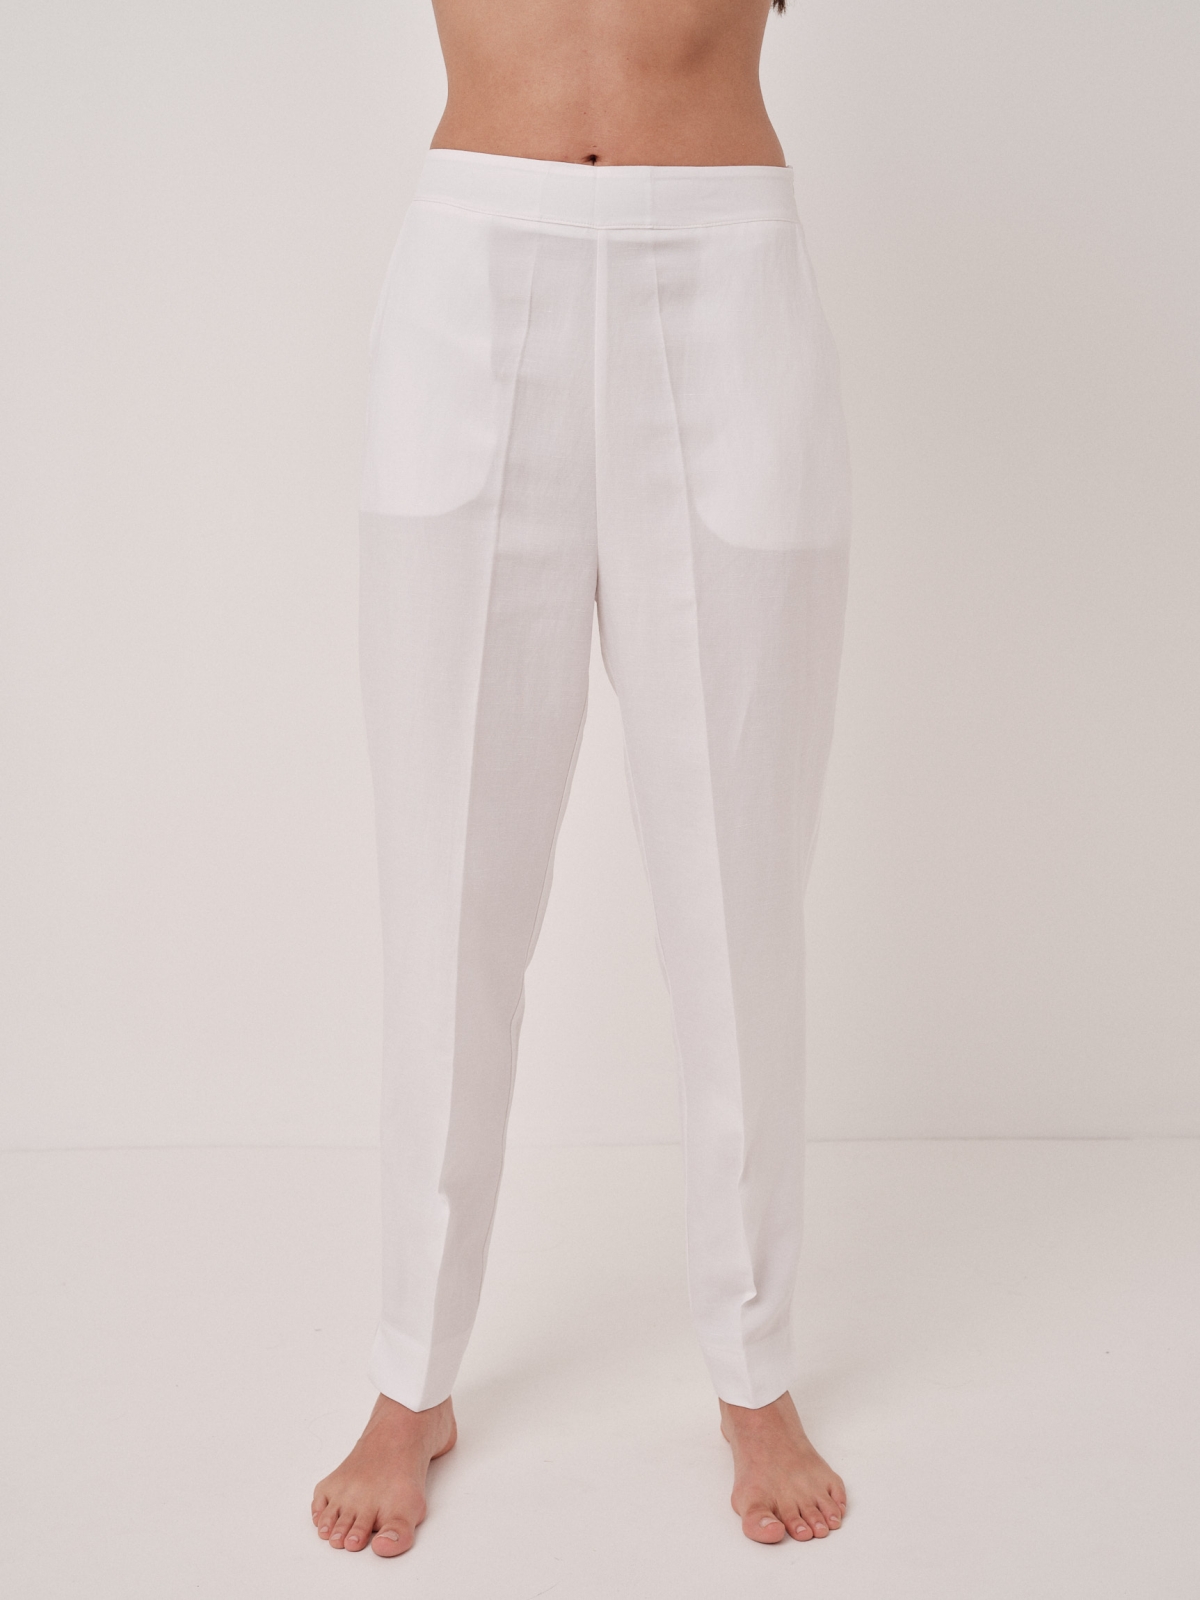 MILVA MI - Pantalone Bianco